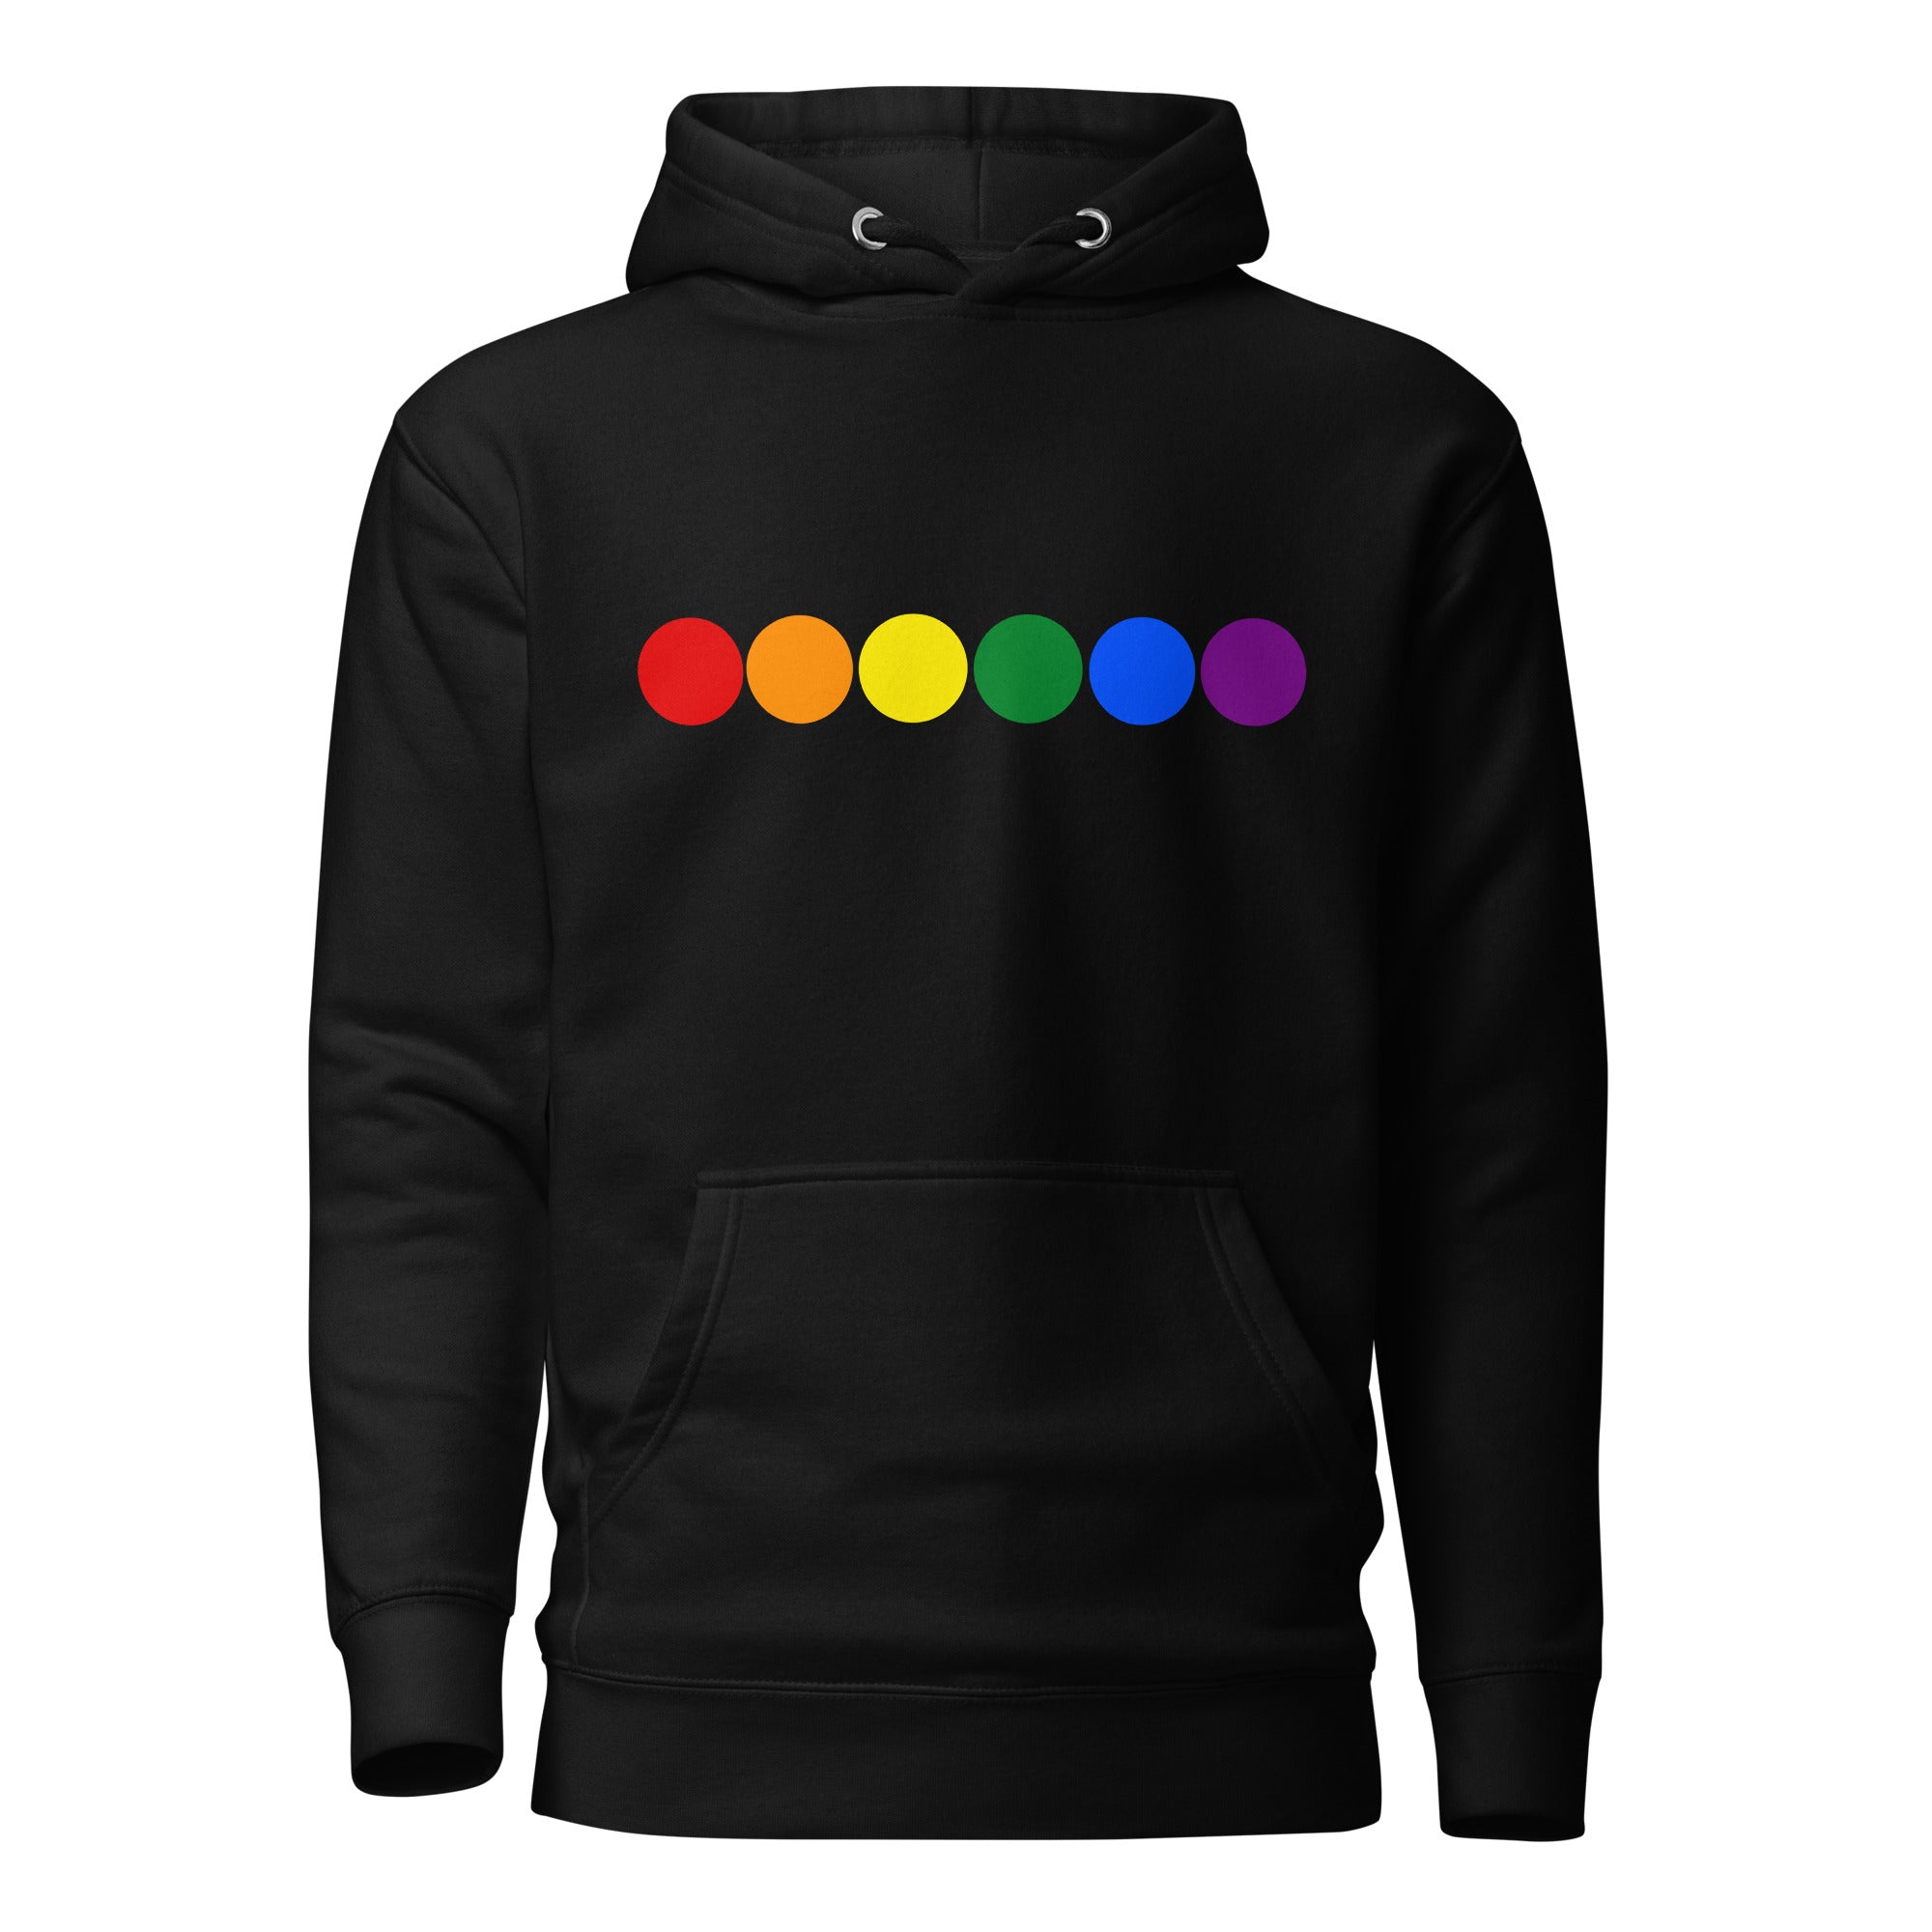 PR-S-GINN-HOOD-NP Unisex: Pride hoodie